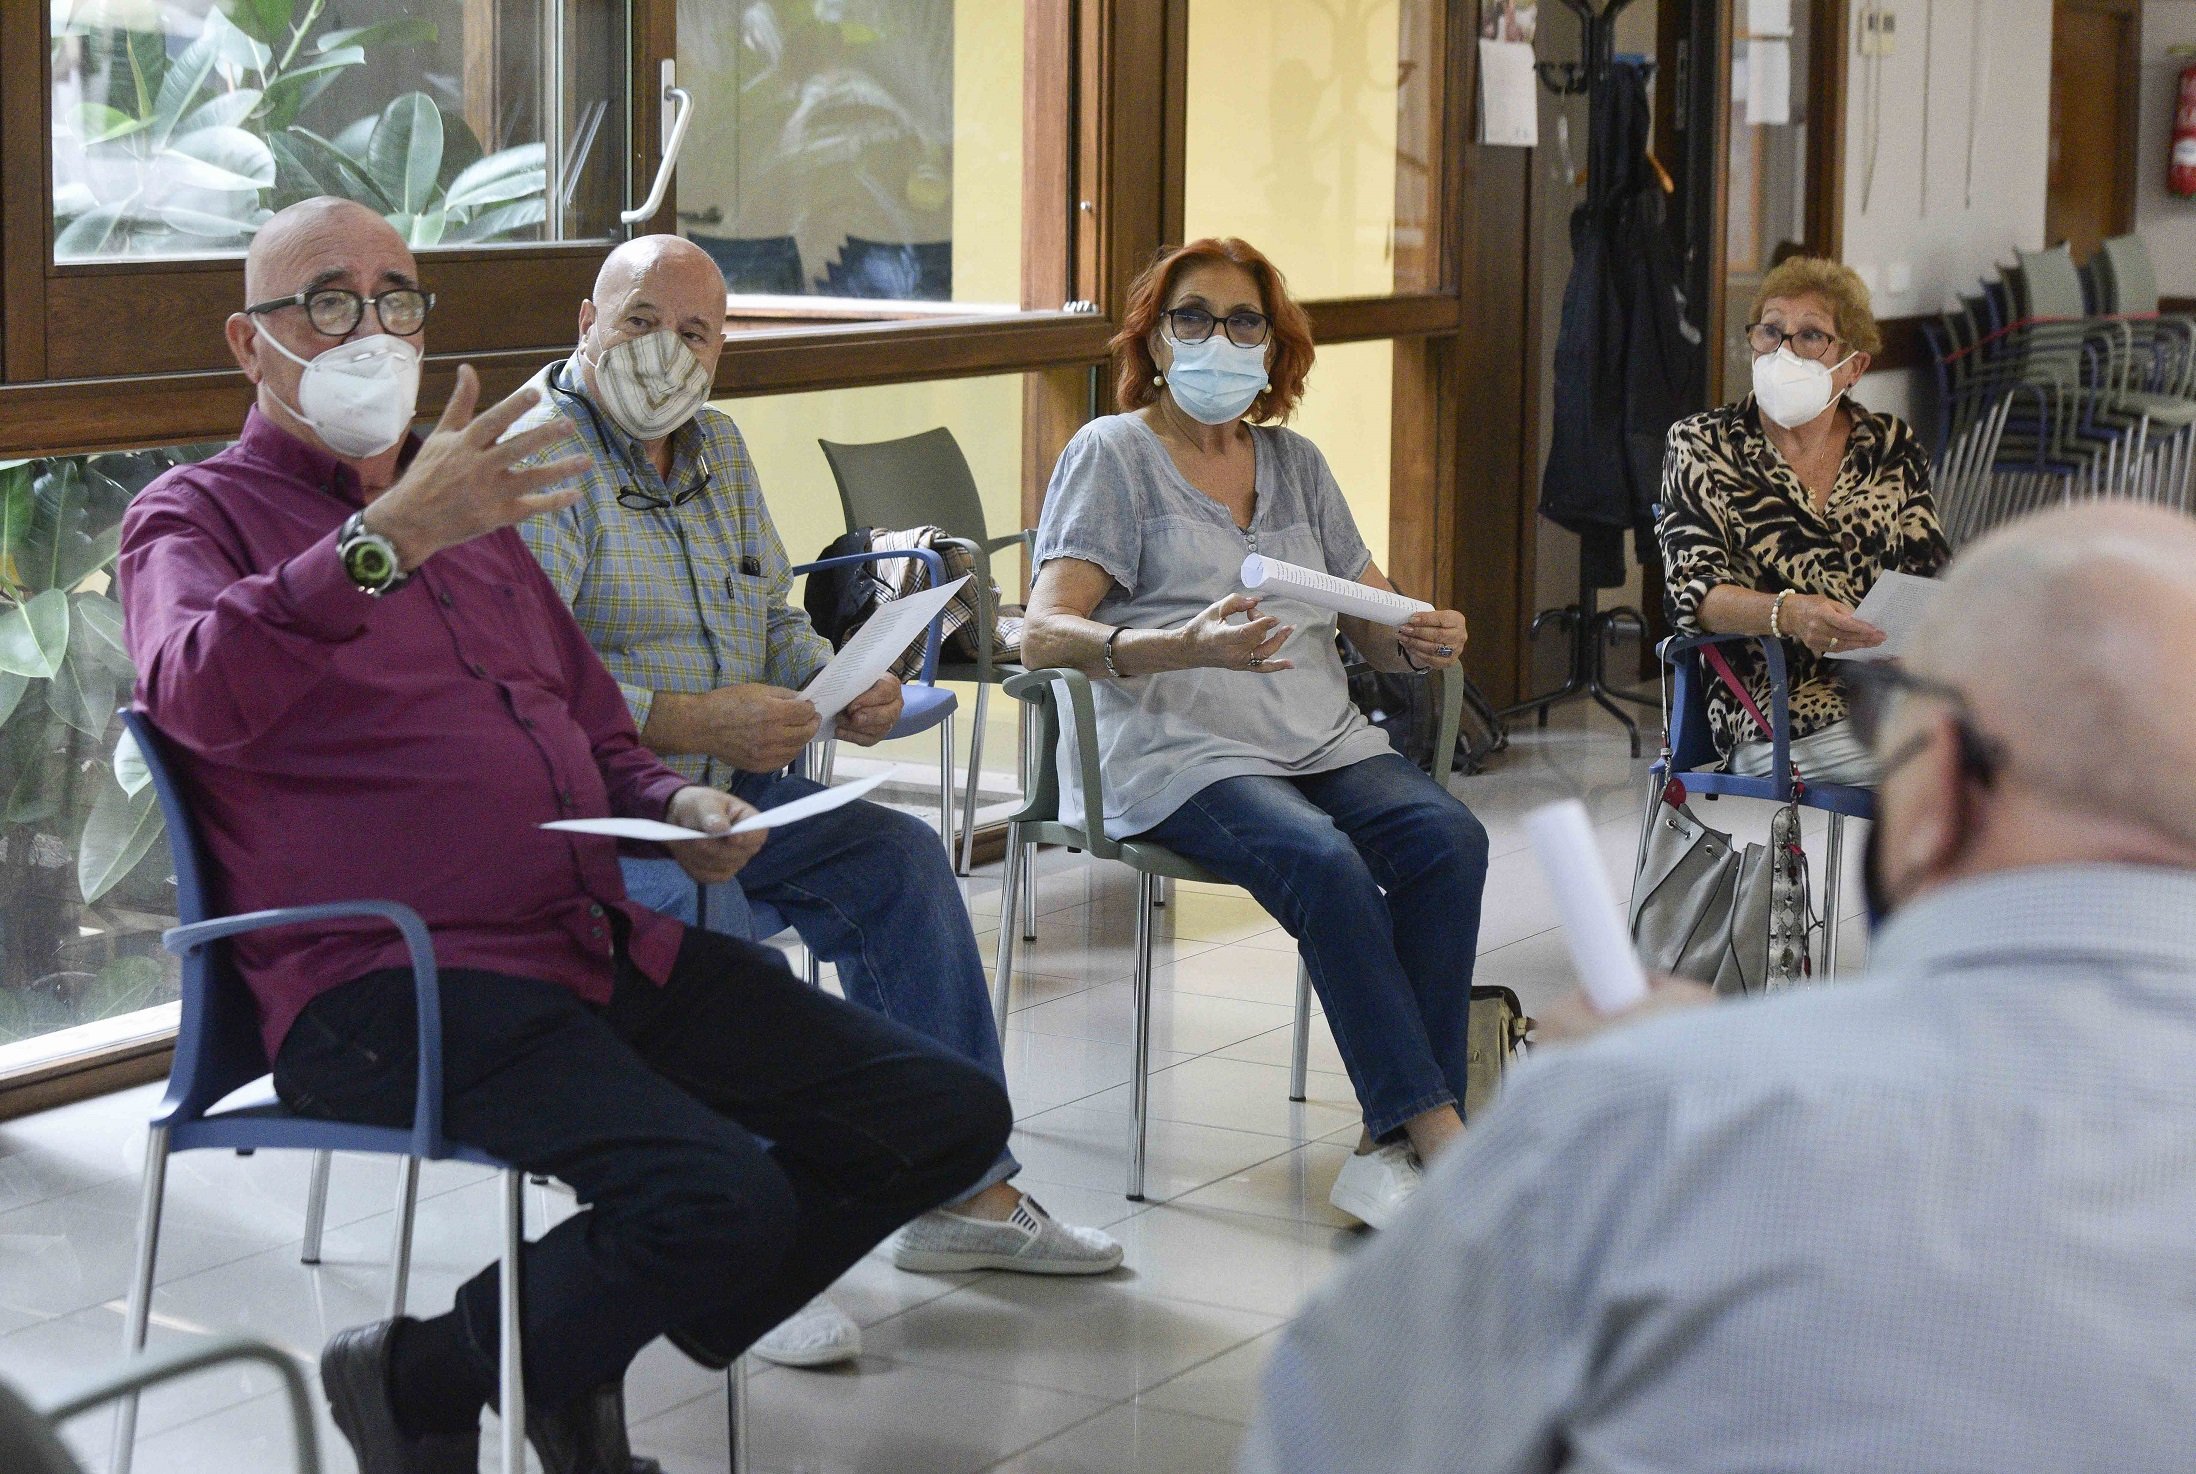 30 centres de gent gran de La Caixa reobren després de la pandèmia